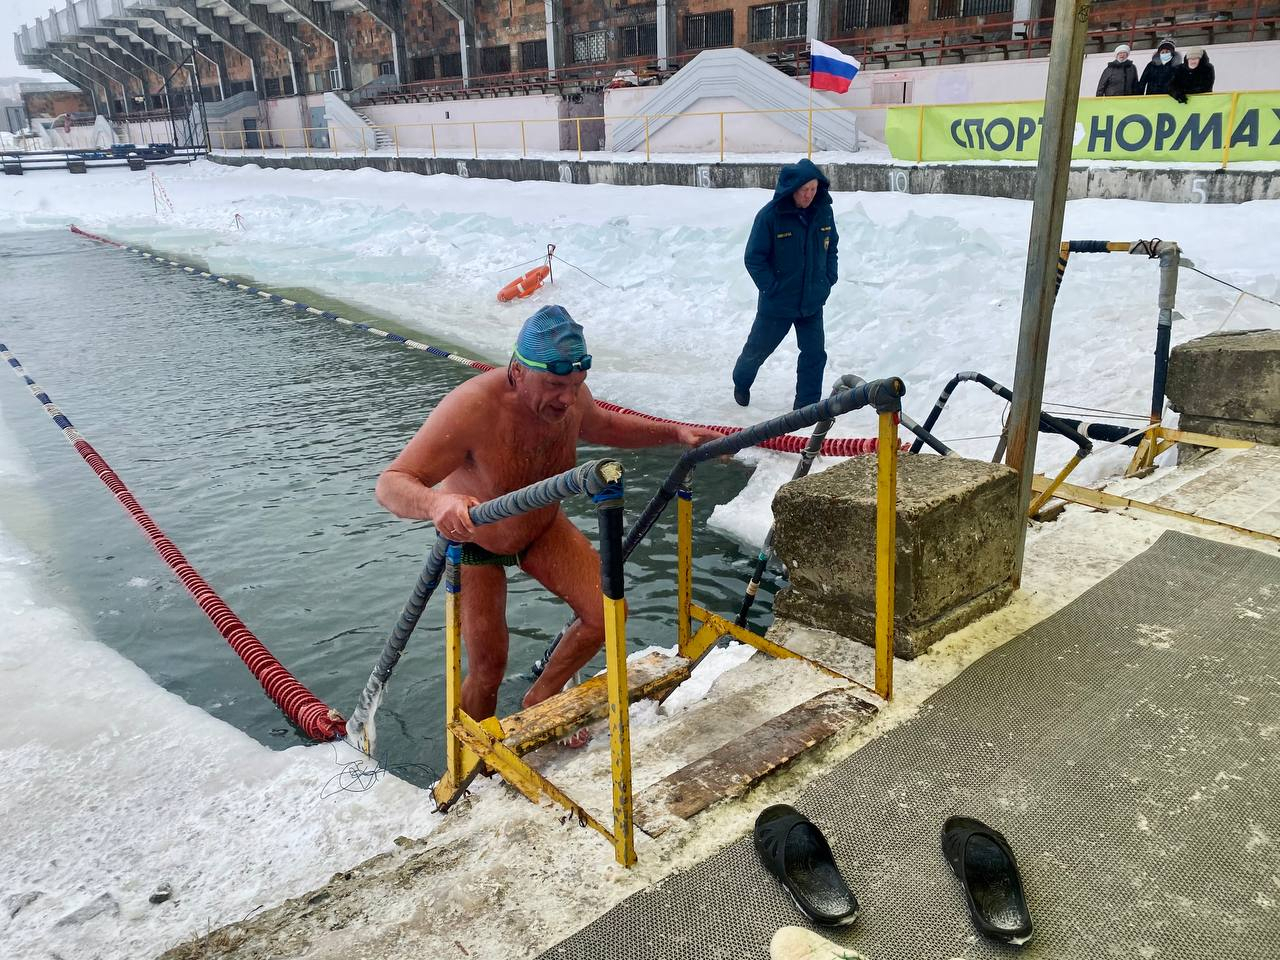 Сейчас вам станет холодно: в Рязани люди утроили заплыв в ледяной воде